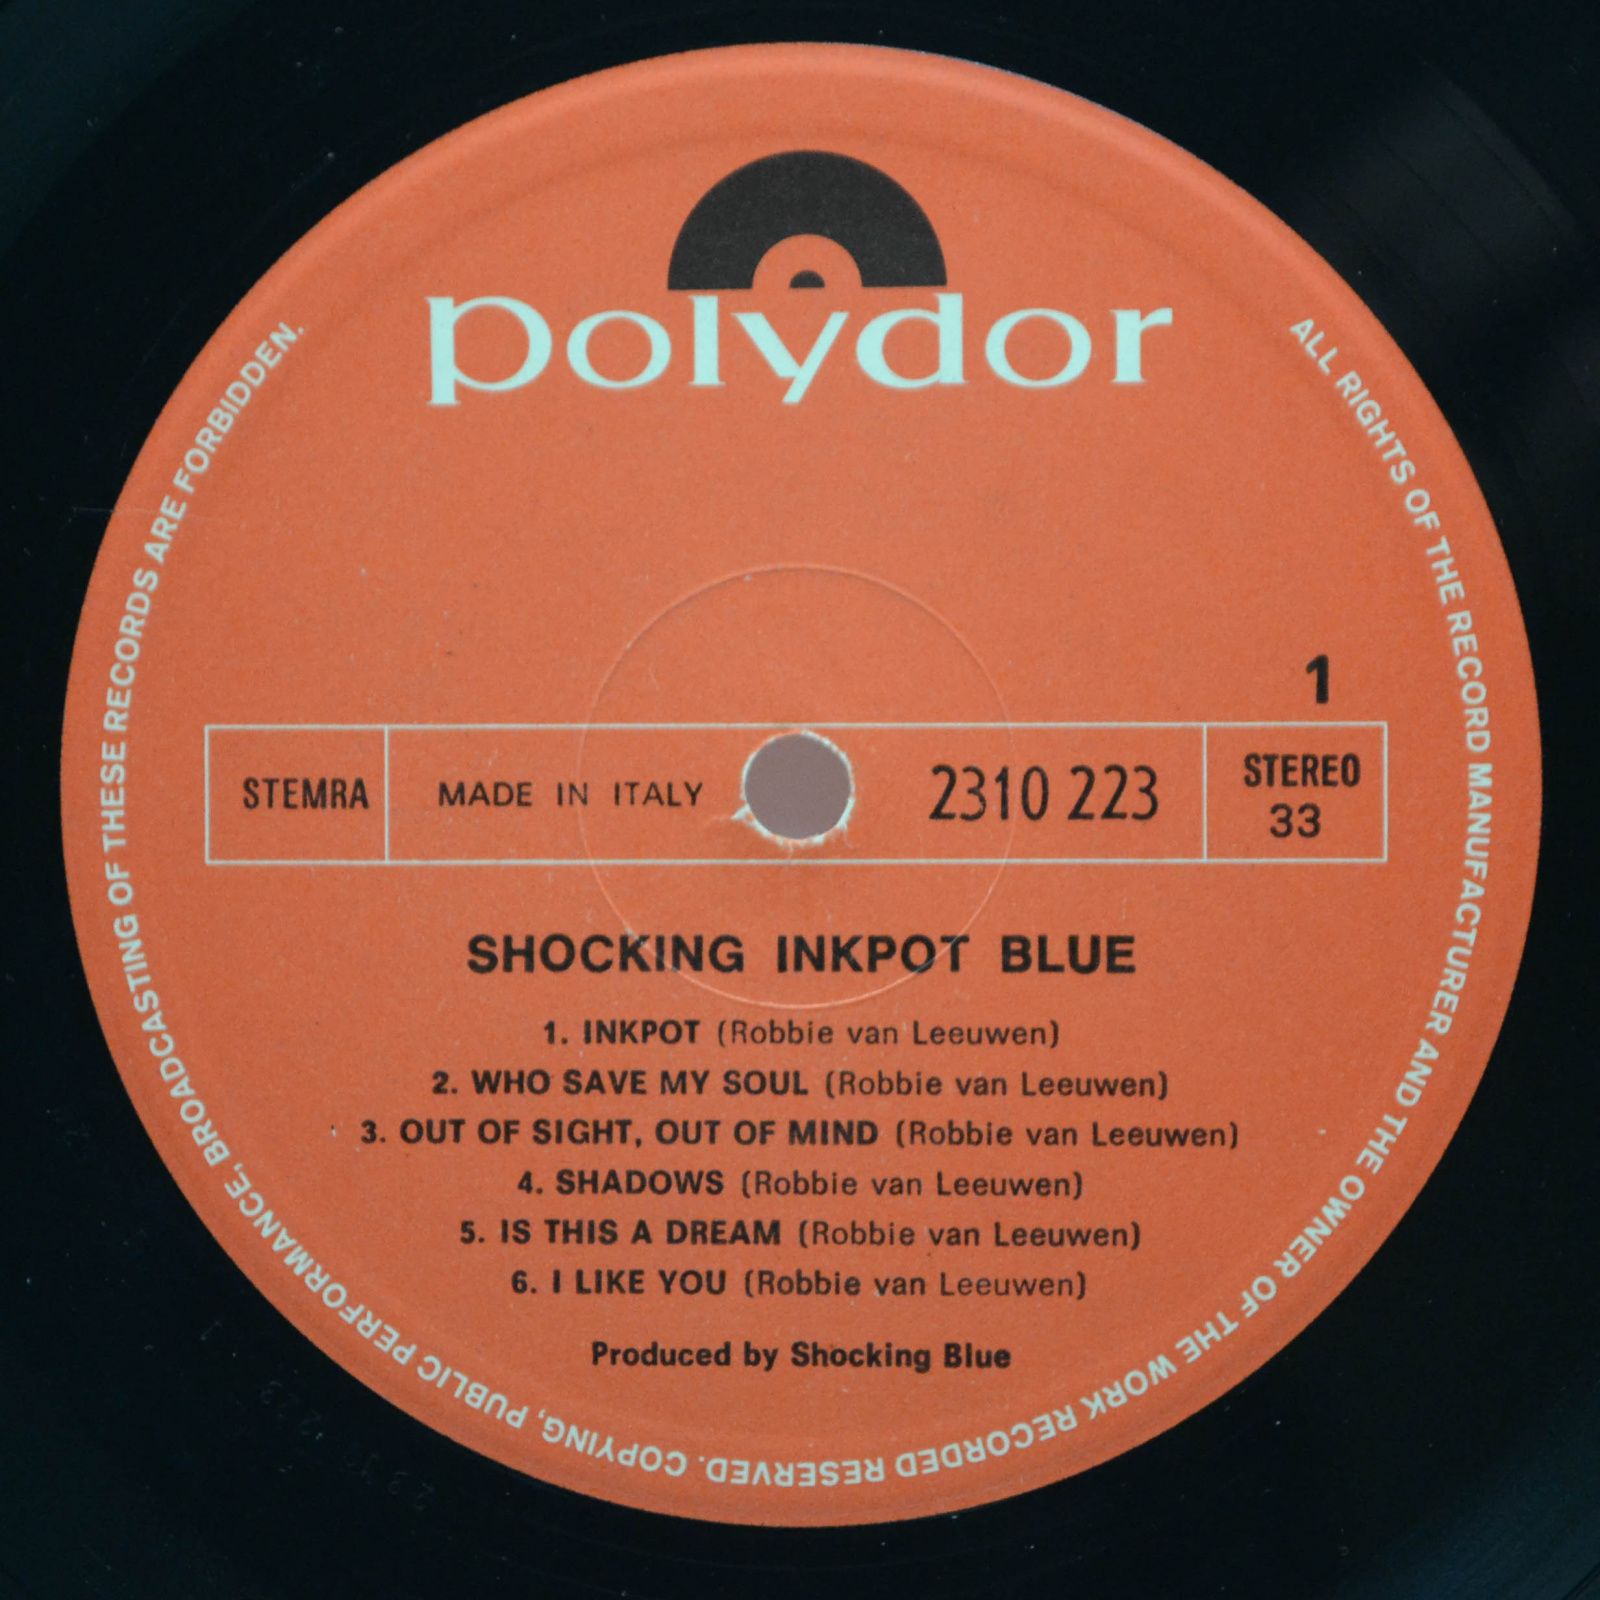 Shocking Blue — Inkpot, 1972